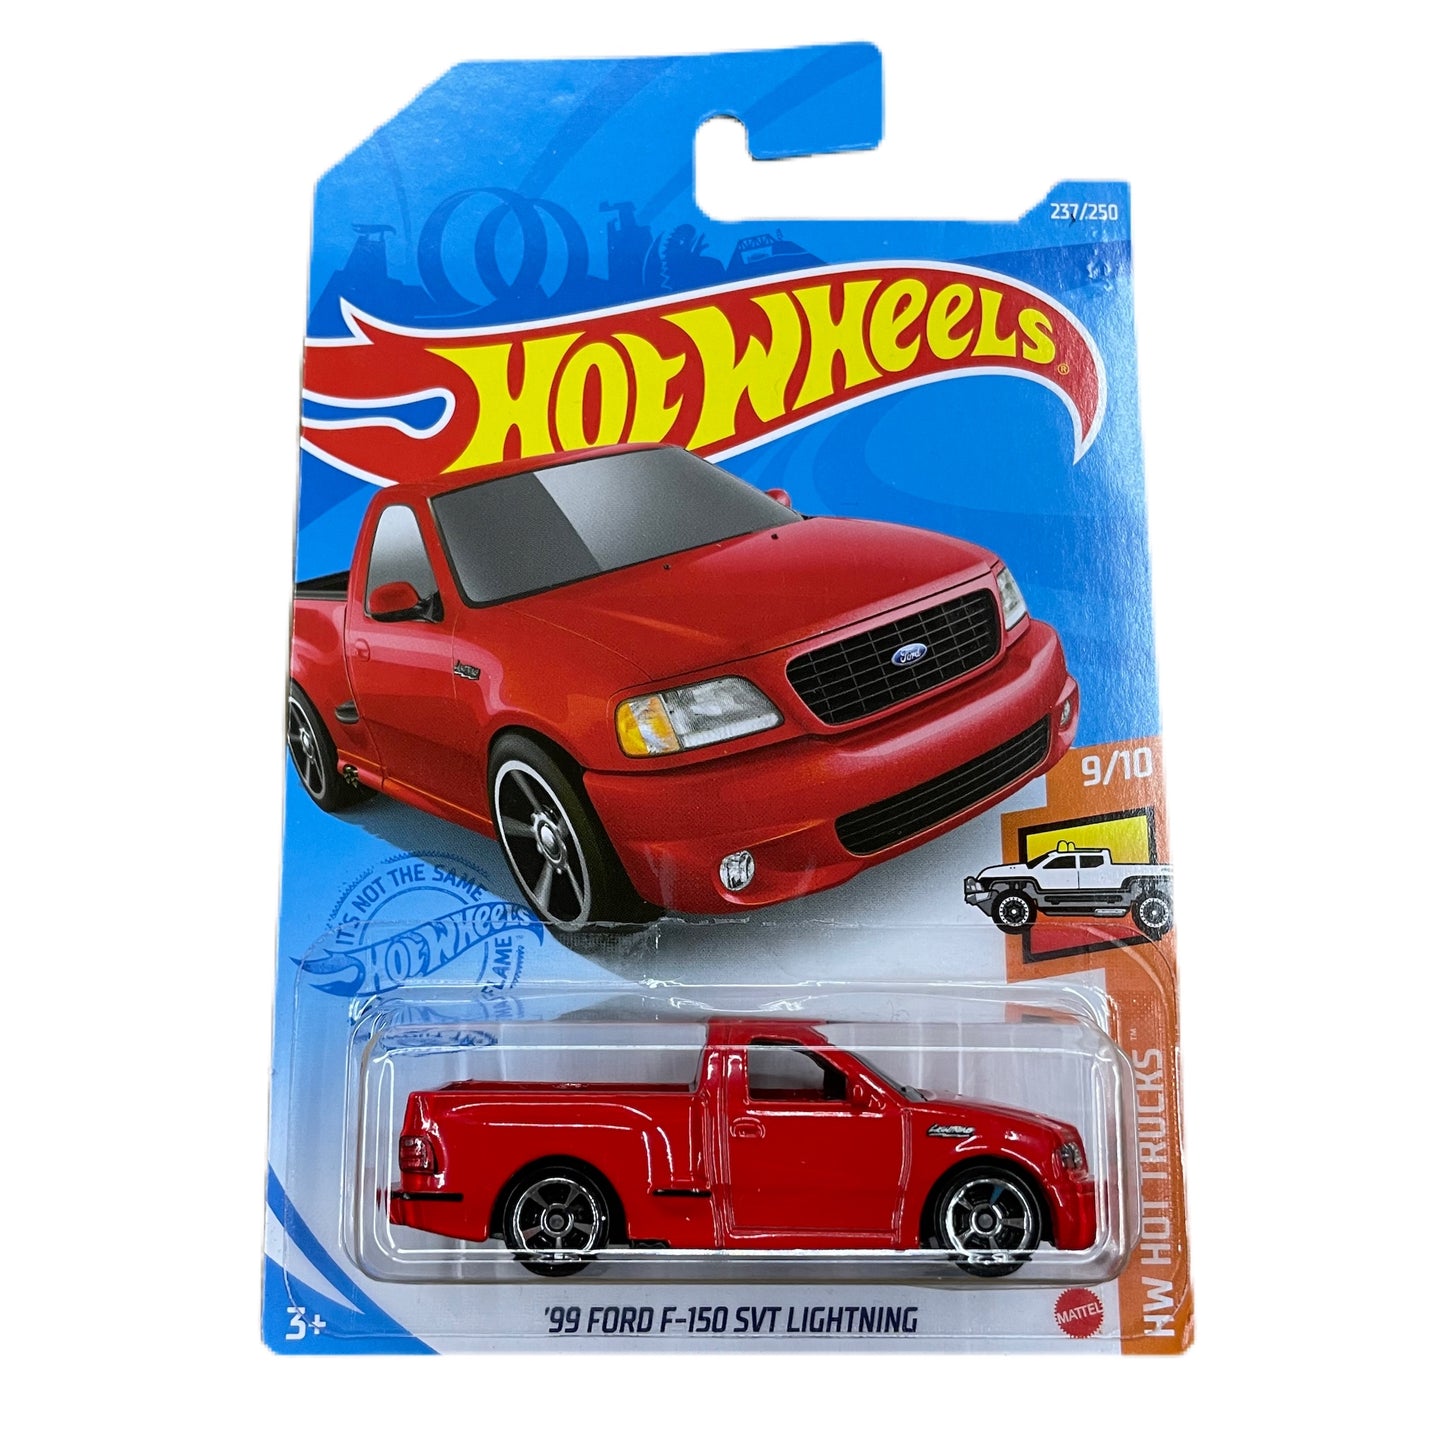 Hot Wheels mainline 99 Ford F-150 SVT Lightning ( RED )#237/250